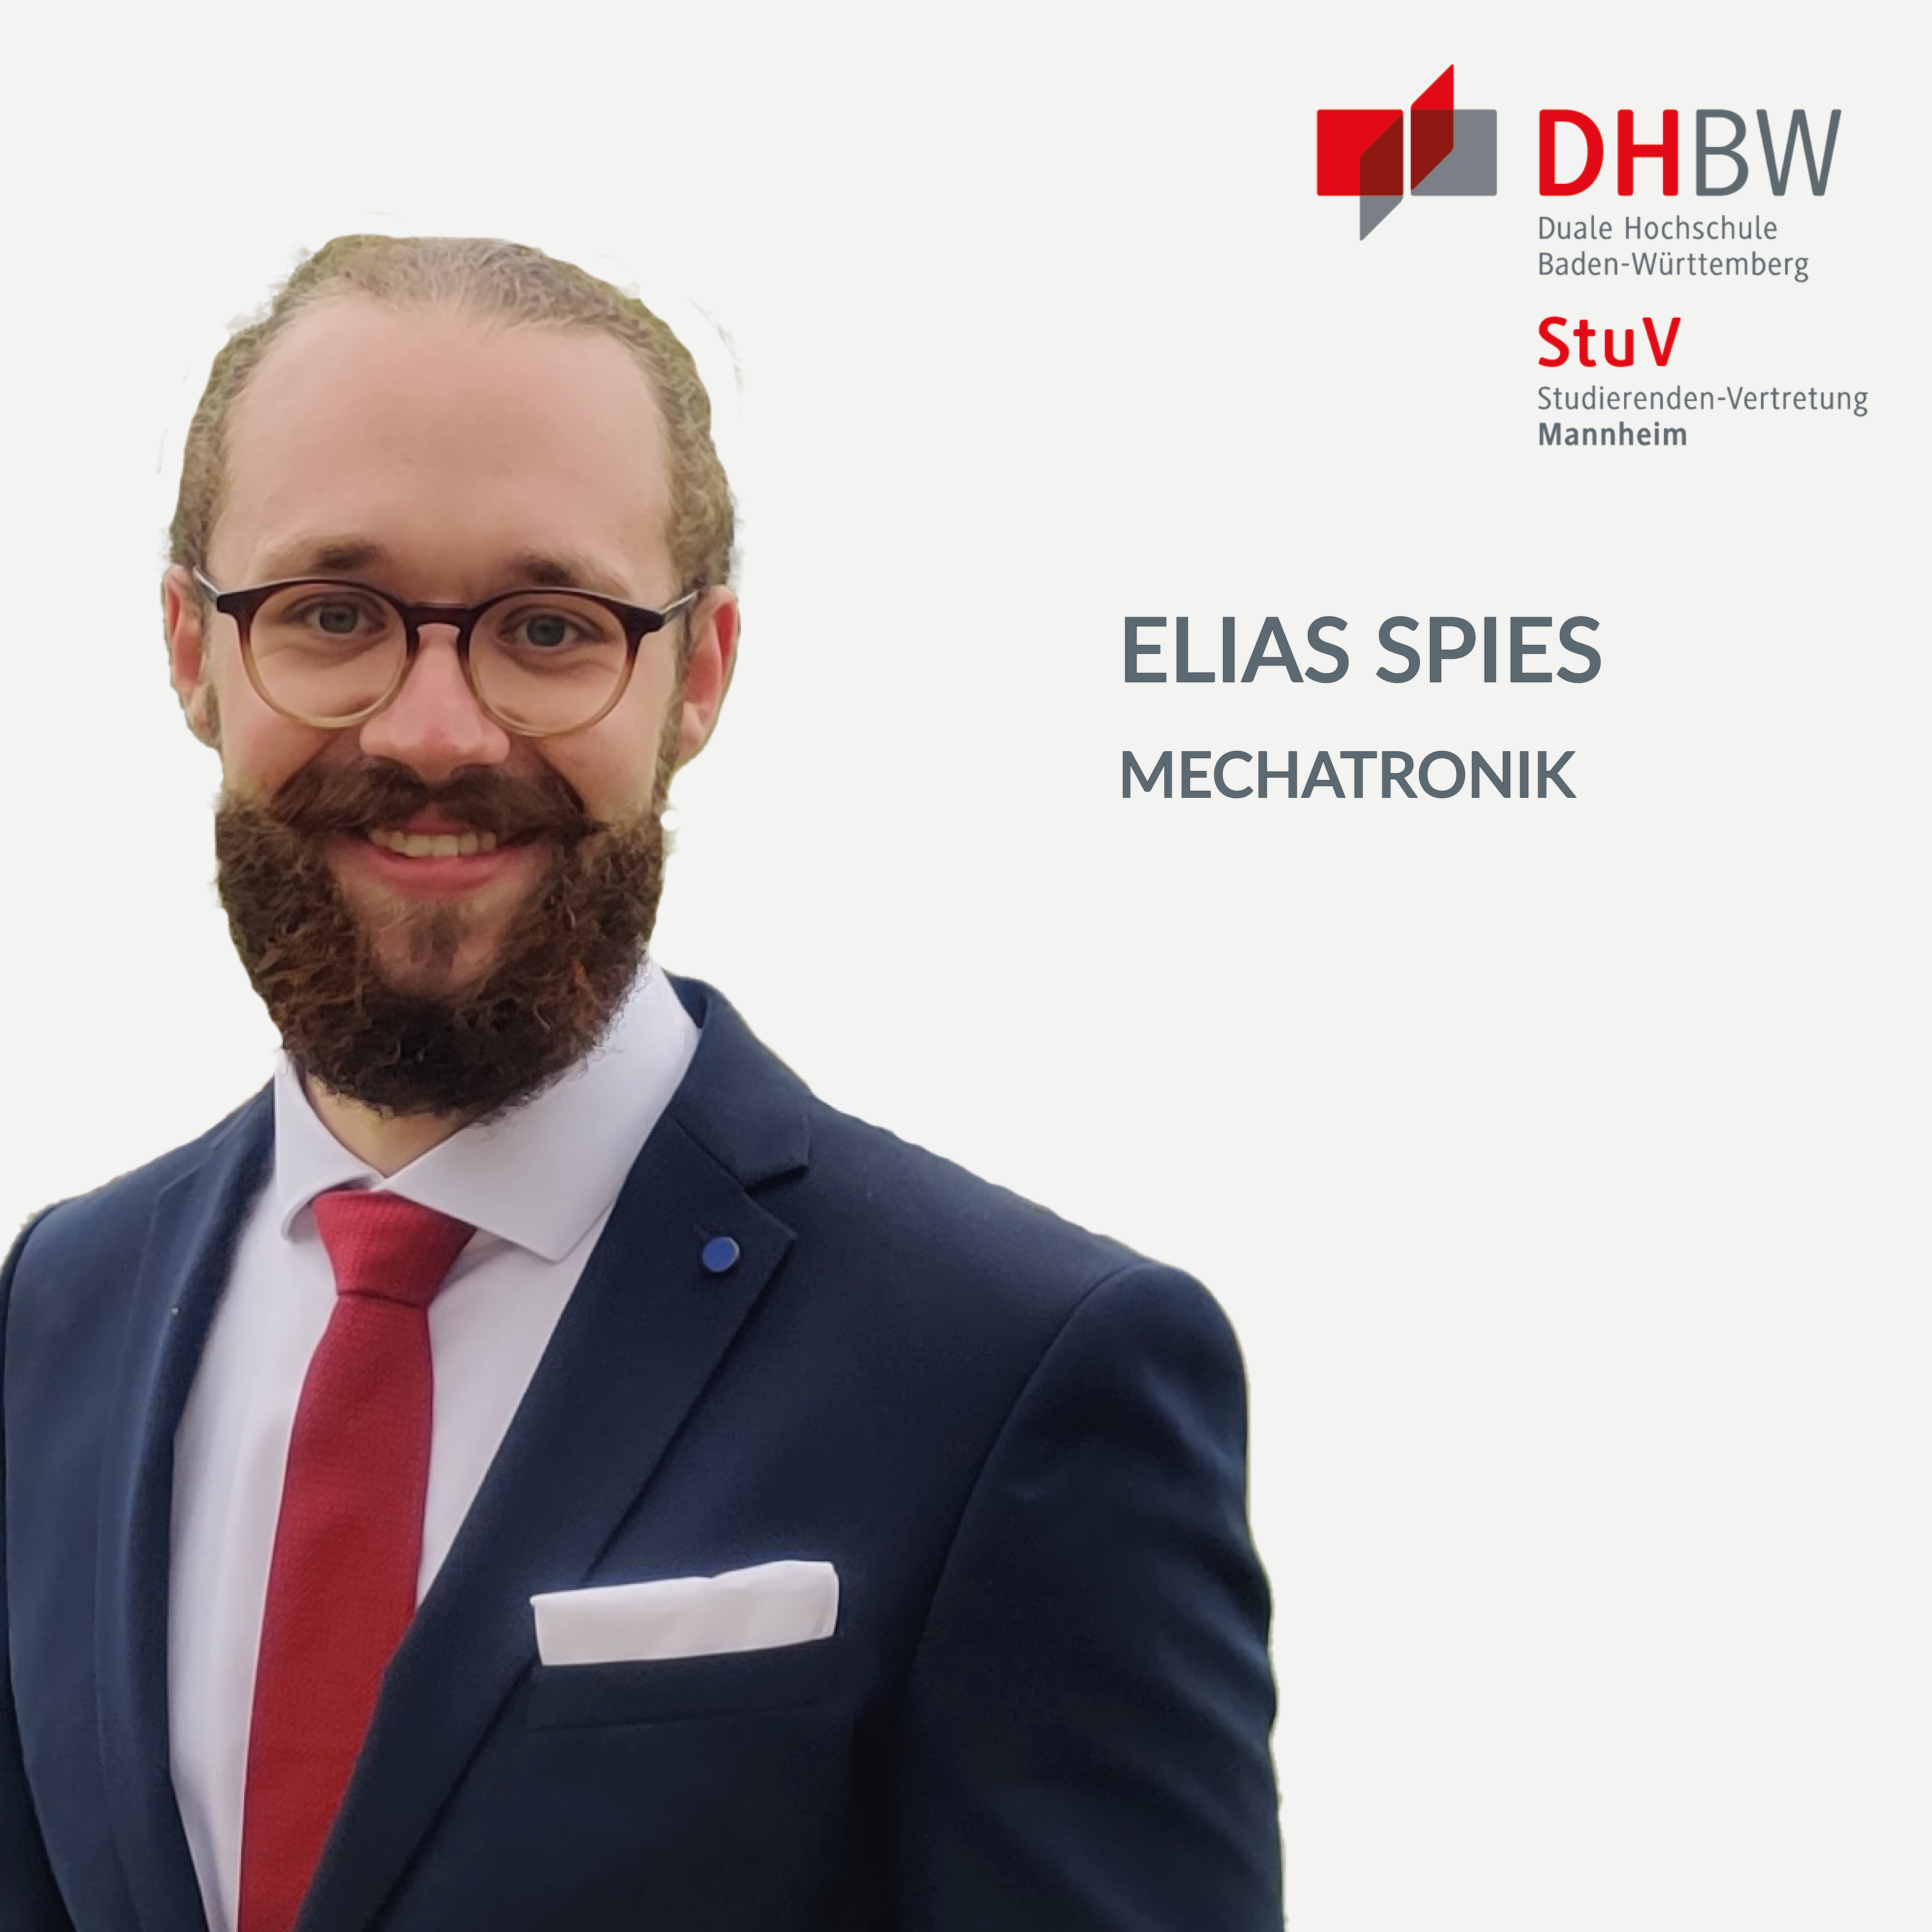 Elias Spies